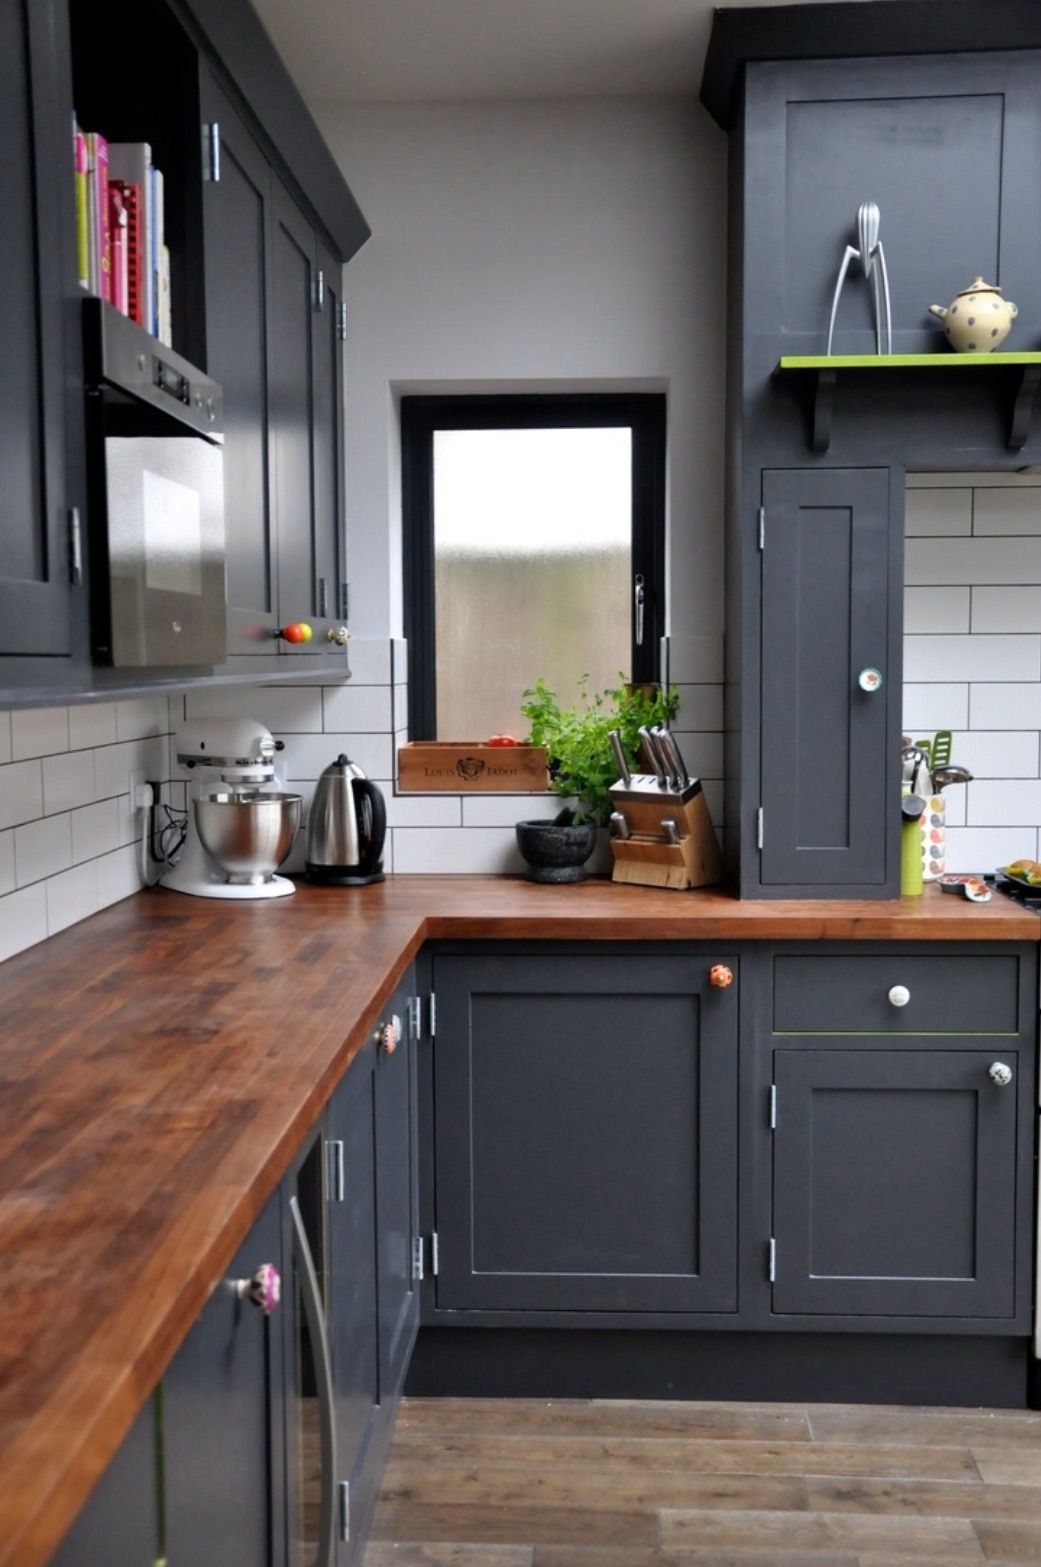 Những ý tưởng thiết kế siêu dễ giúp bạn sở hữu căn bếp đẹp mơ màng ấn tượng - Ảnh 4.